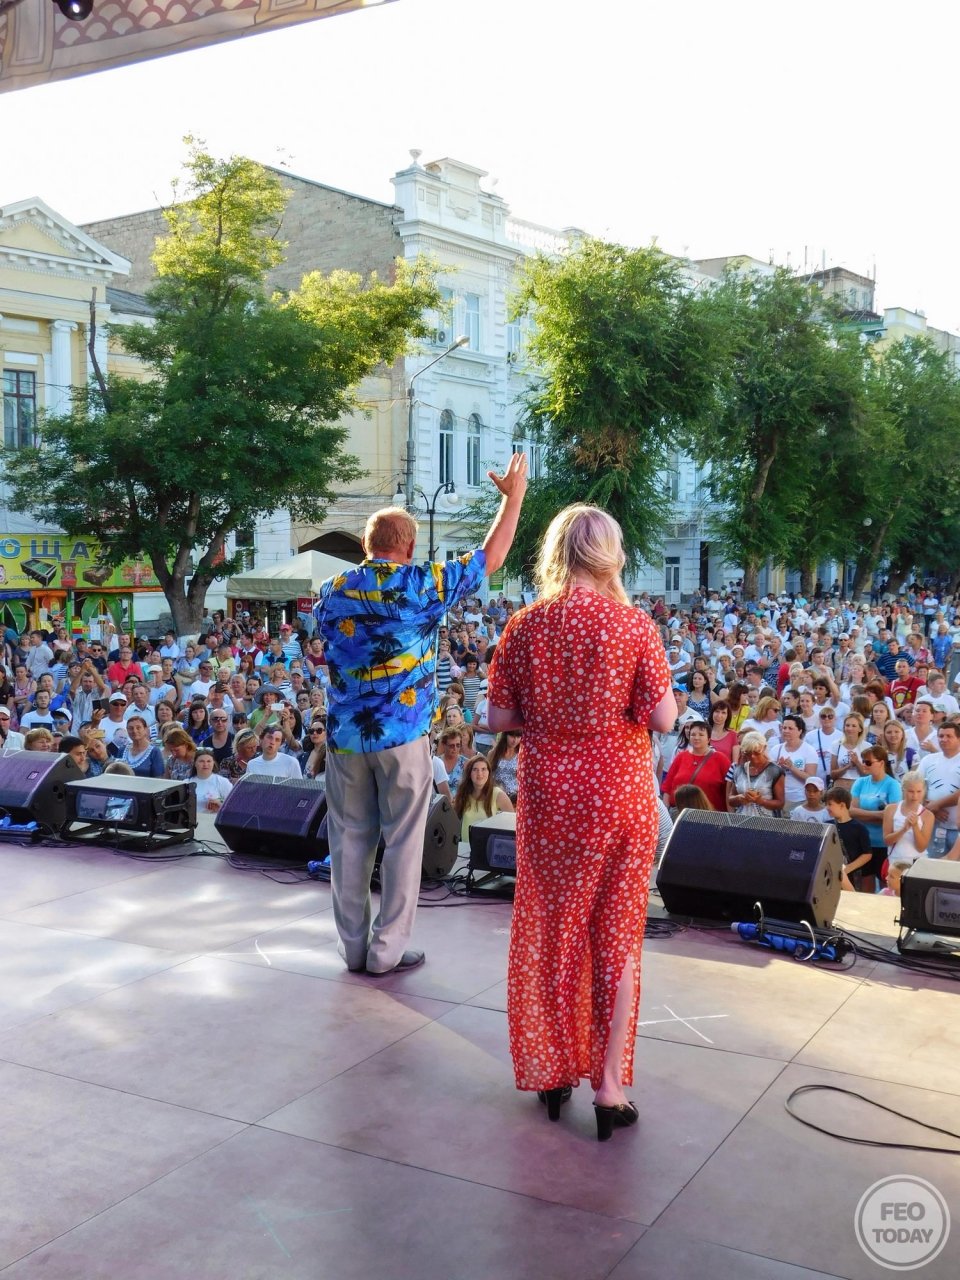 Фото концерта на День города 2017 и юбилей Айвазовского в Феодосии #2068